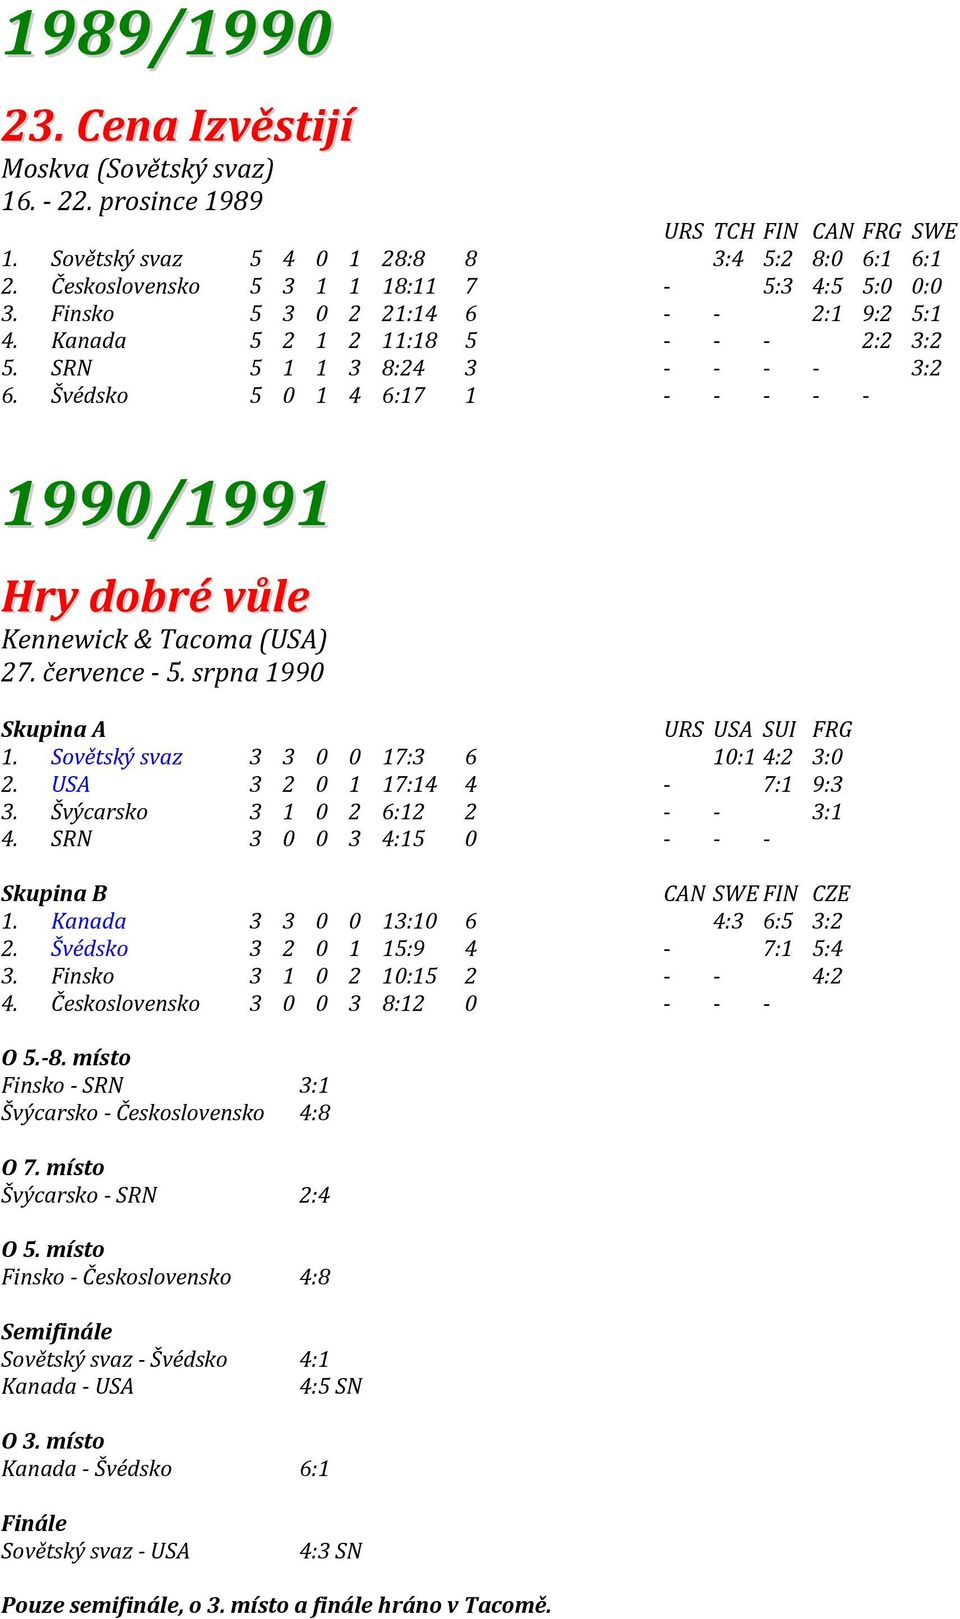 Švédsko 5 0 1 4 6:17 1 - - - - - 1990/1991 Hry dobré vůle Kennewick & Tacoma (USA) 27. července - 5. srpna 1990 Skupina A URS USA SUI FRG 1. Sovětský svaz 3 3 0 0 17:3 6 10:14:2 3:0 2.